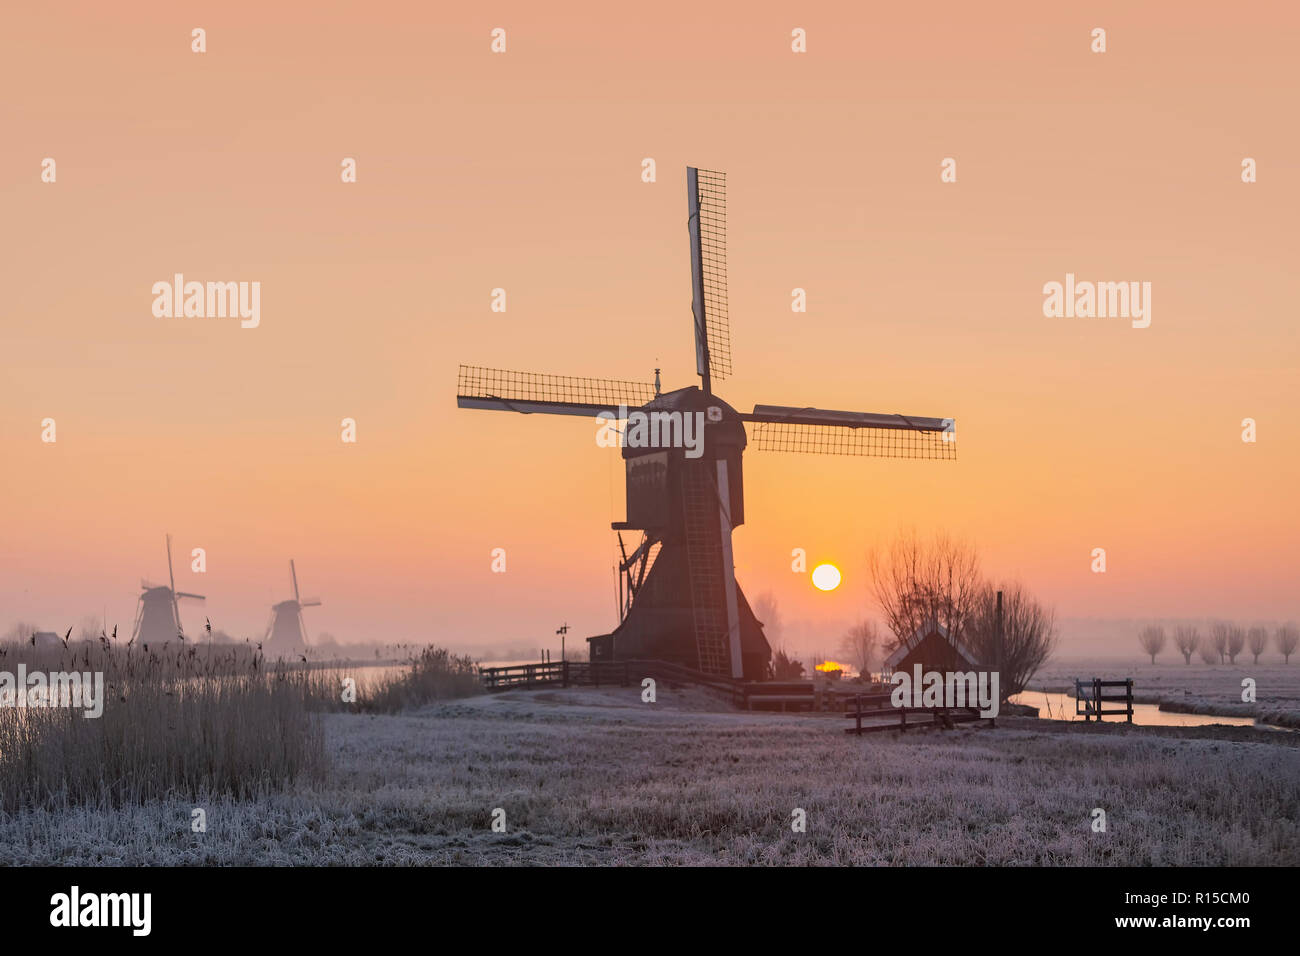 Typische alte niederländische sunset Landschaft im ländlichen Raum der Niederlande mit Mühle und niedrige Wolken Stockfoto